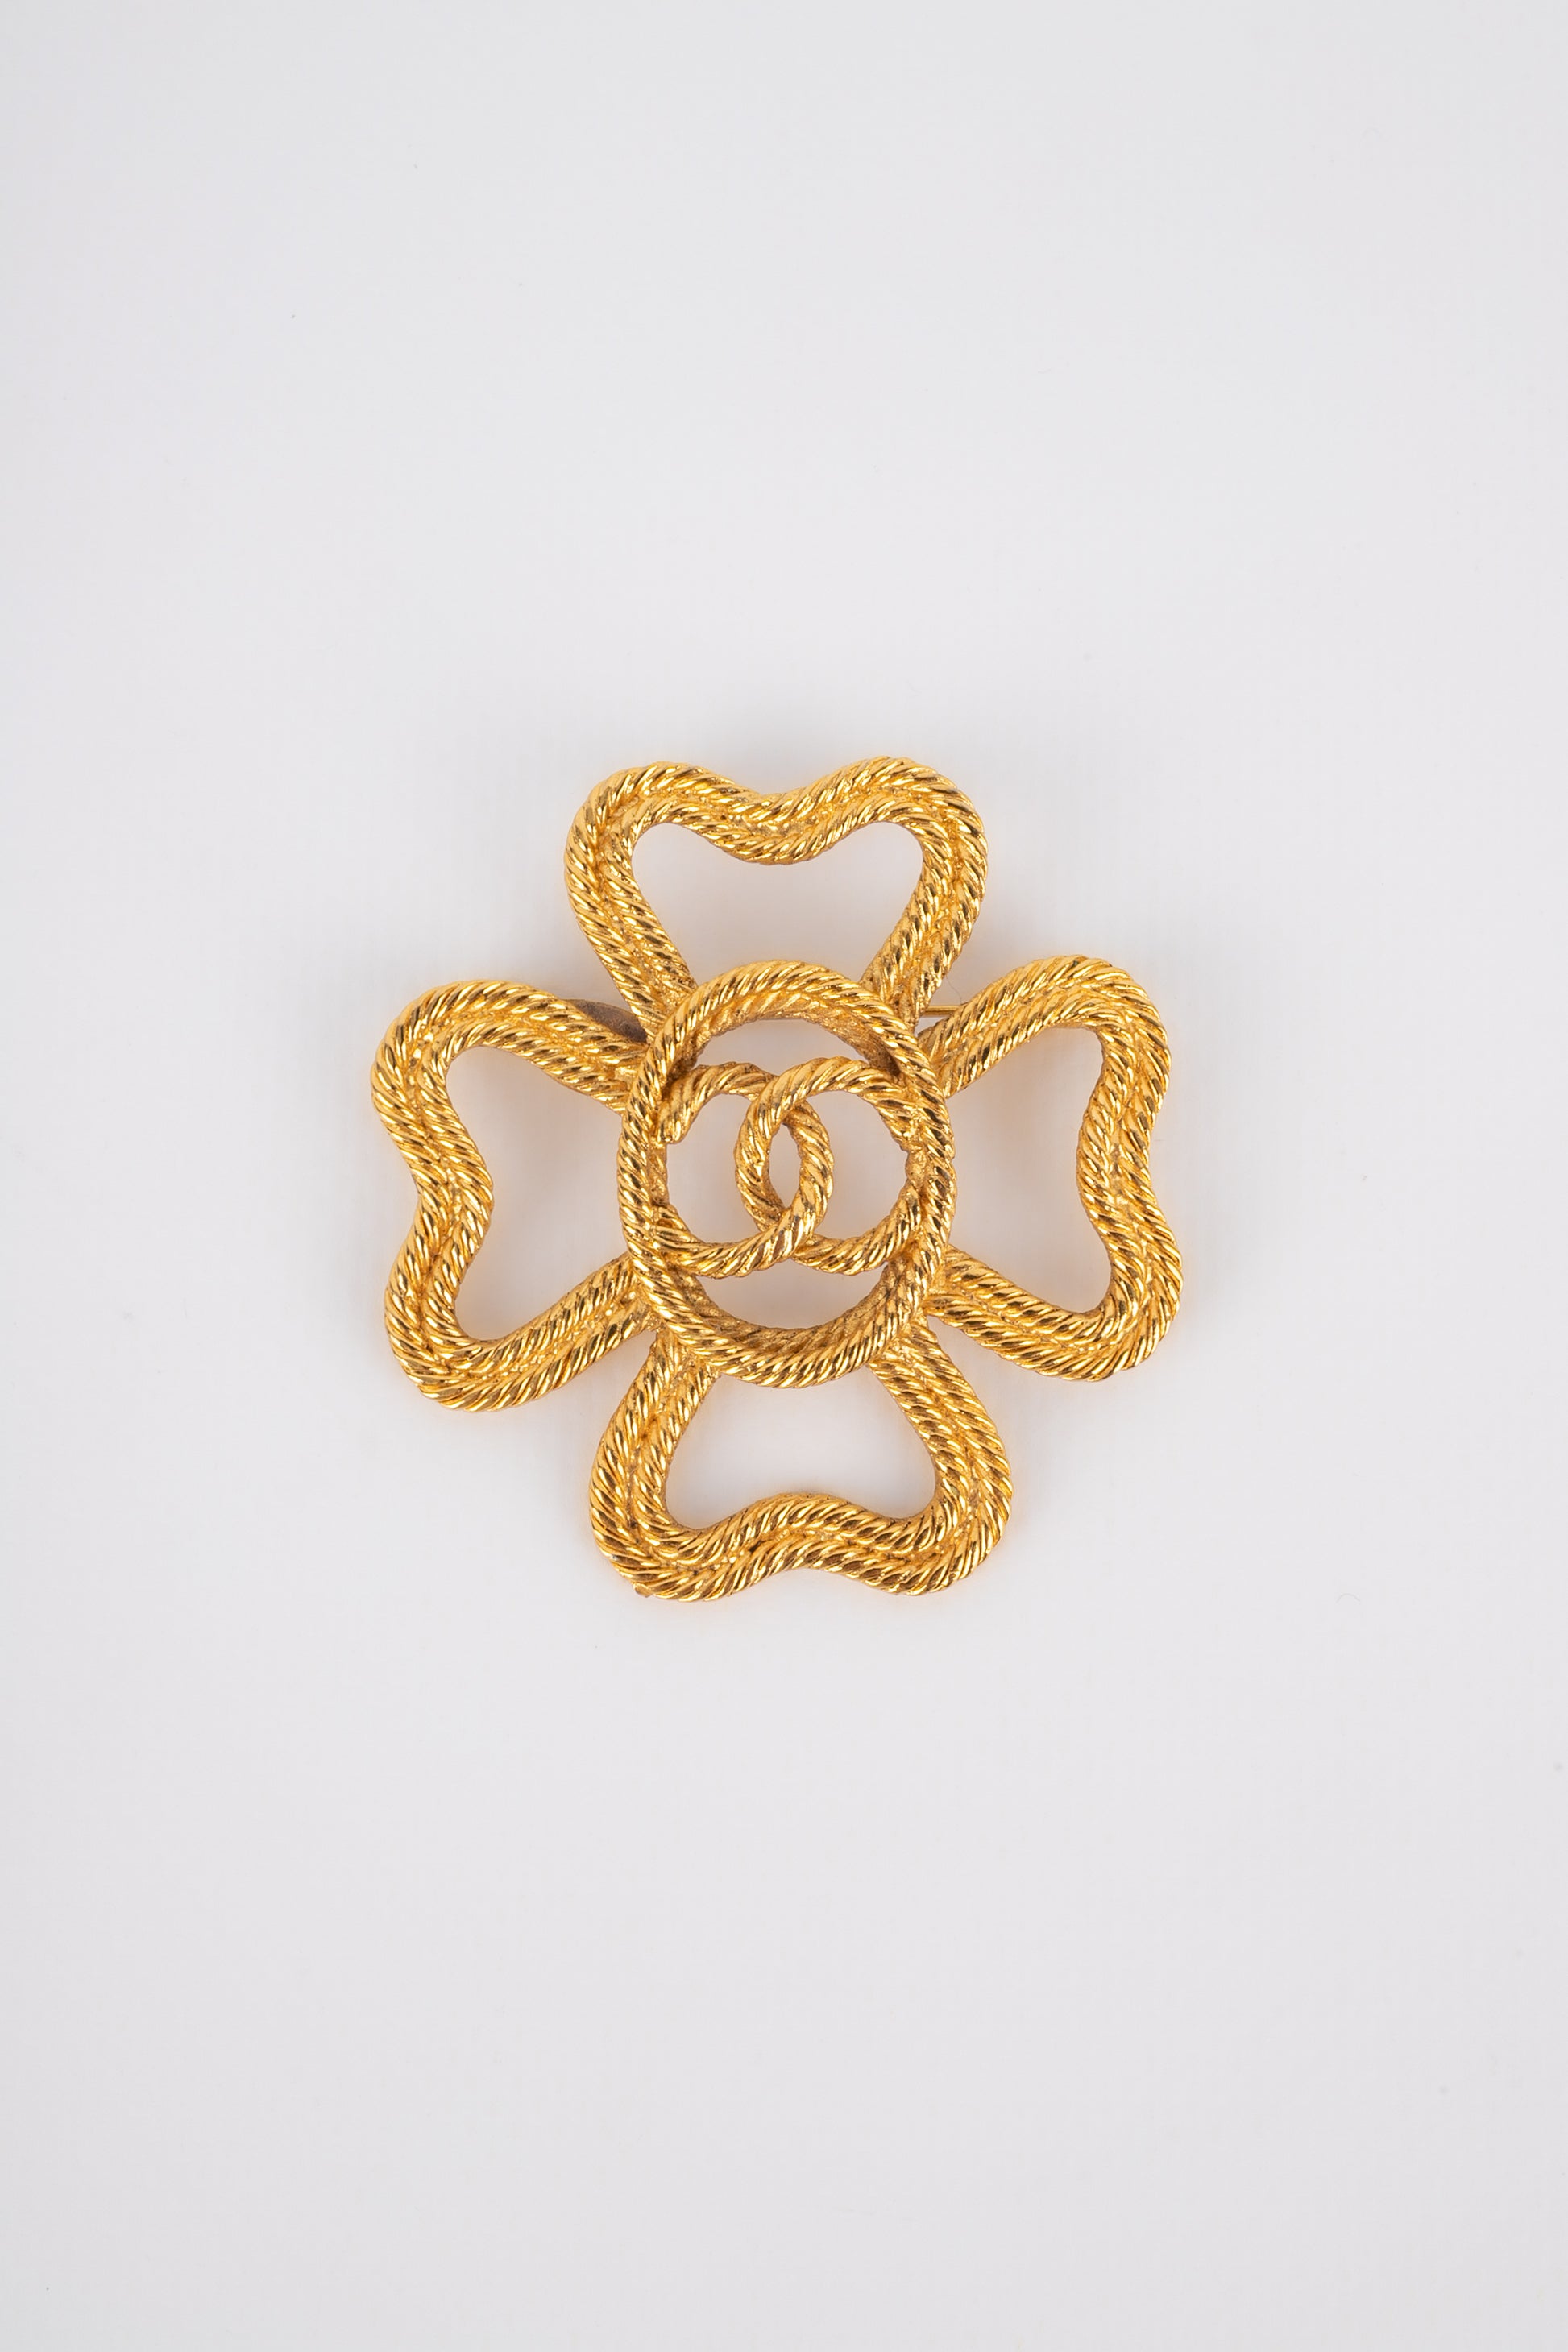 Broche fleur Chanel